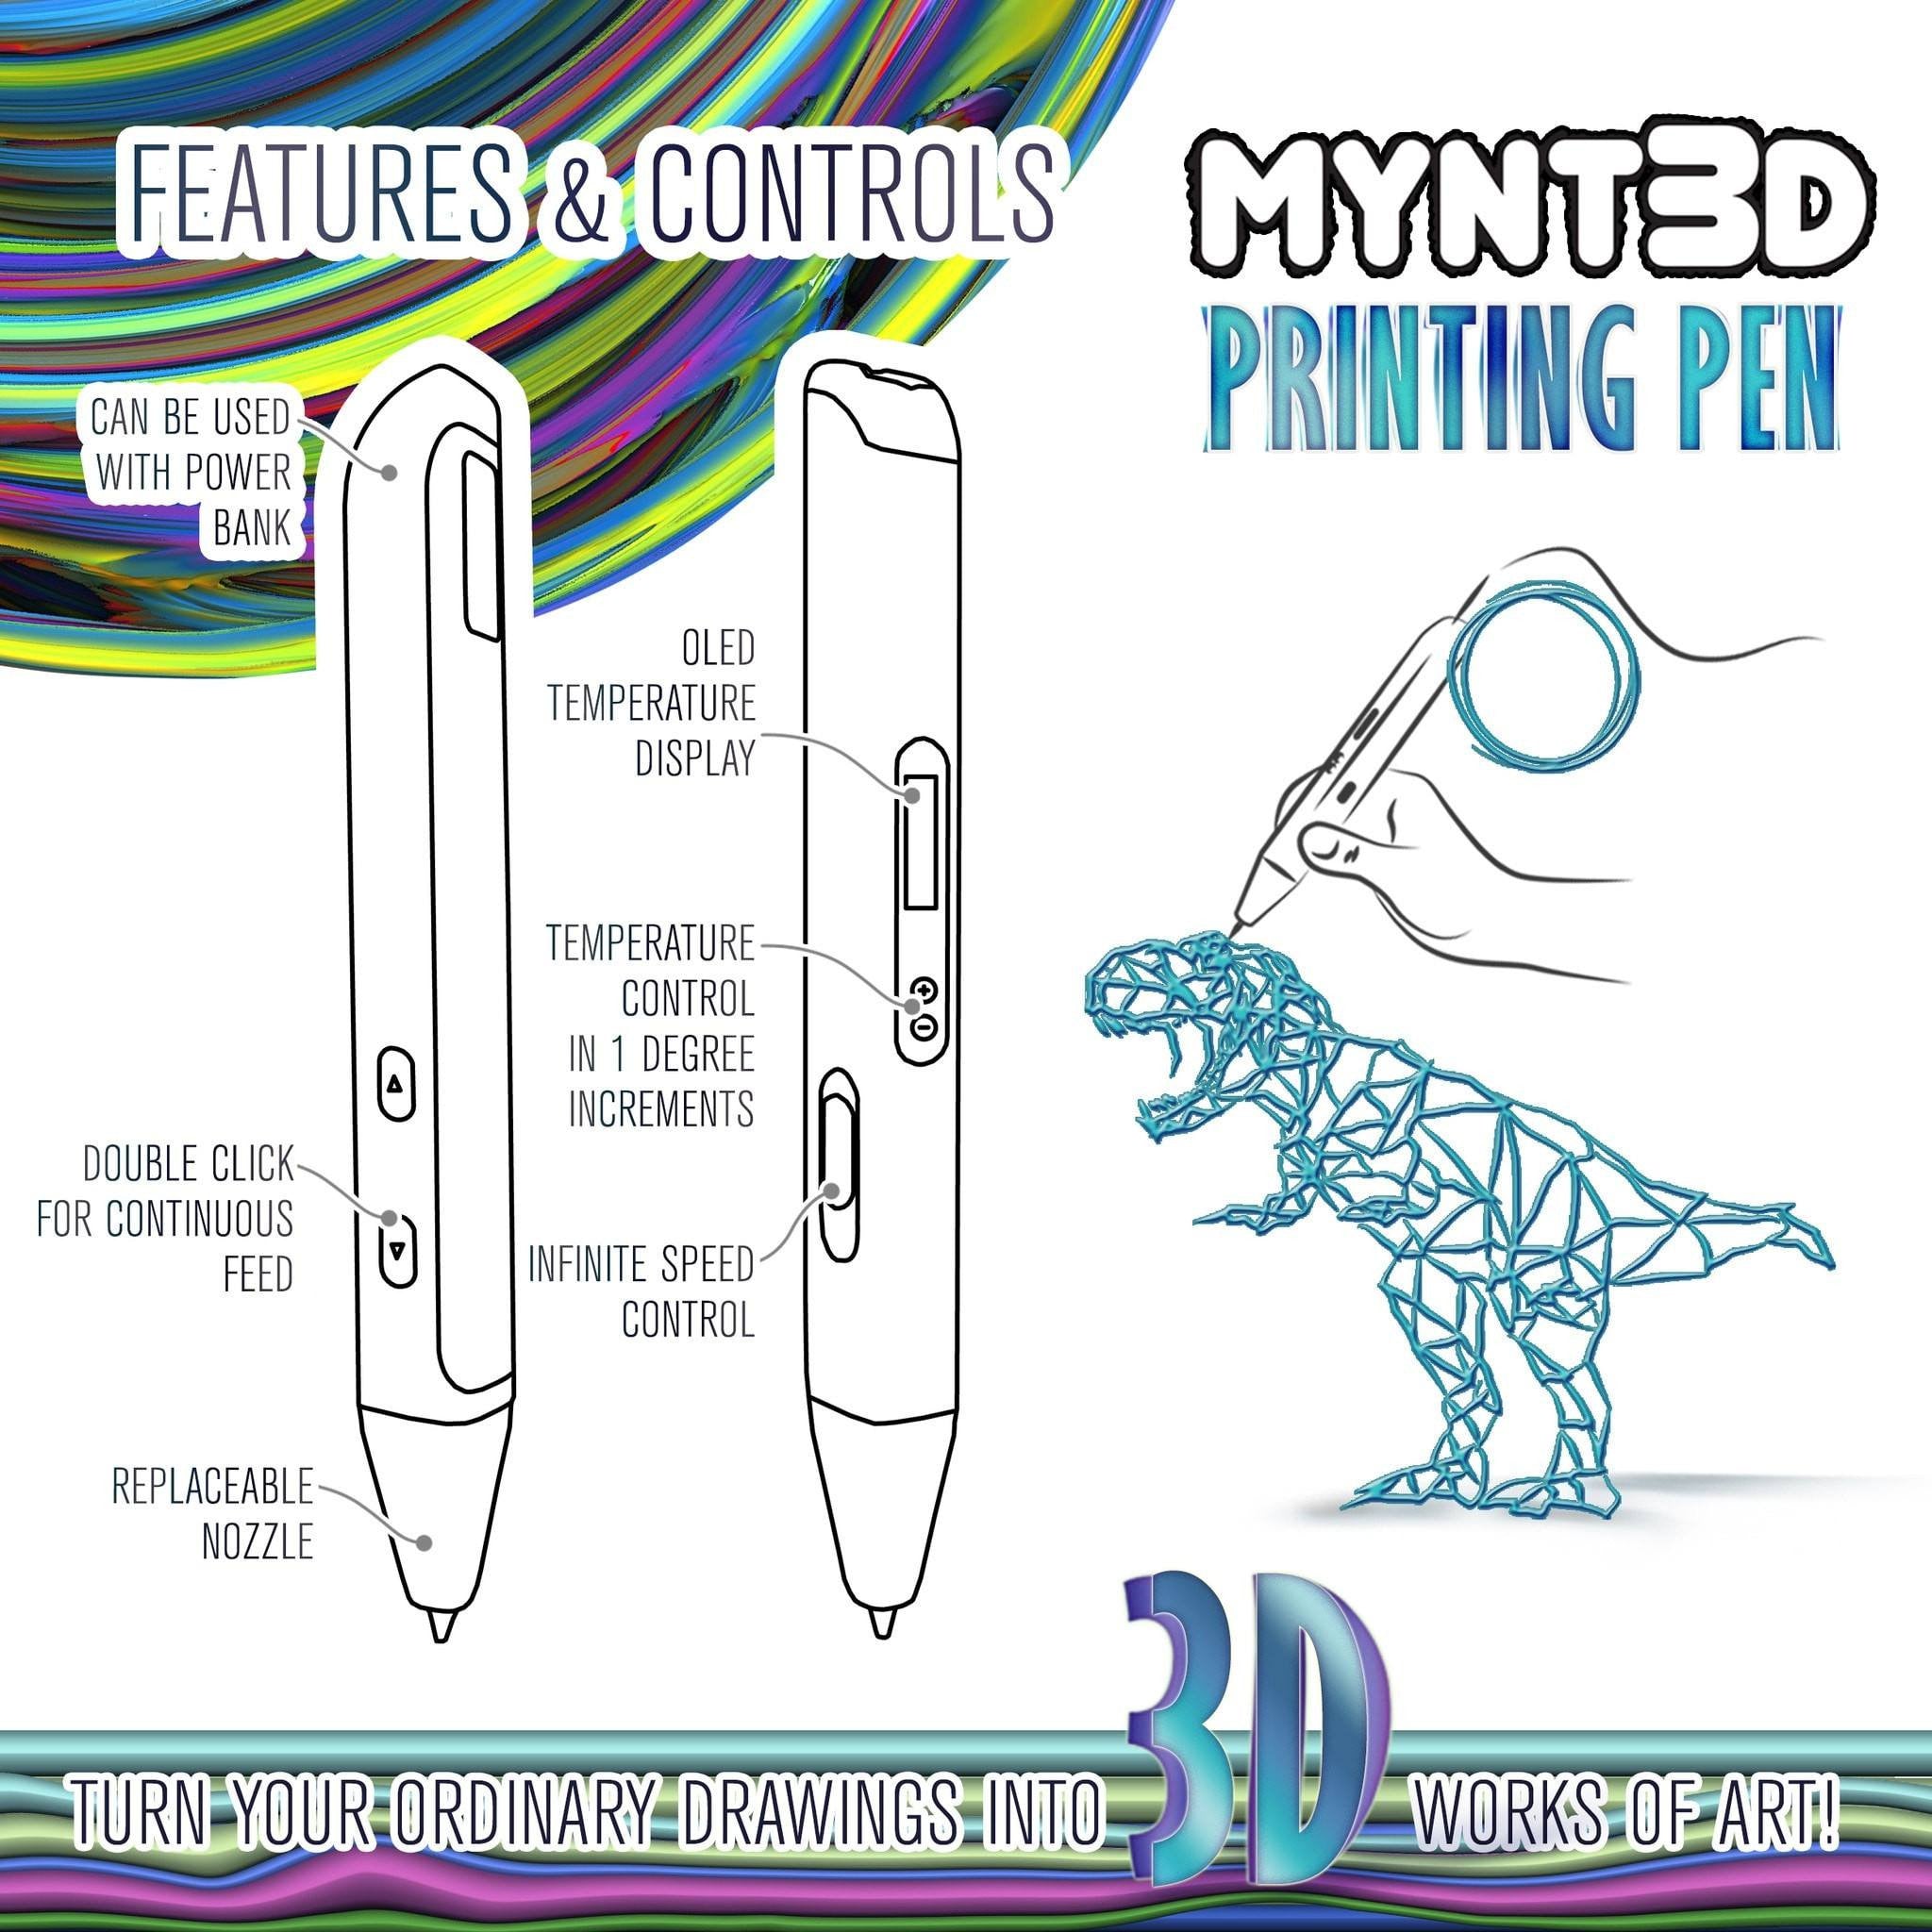 MYNT3D Super 3D Pen Review - ToBuyA3DPrinter